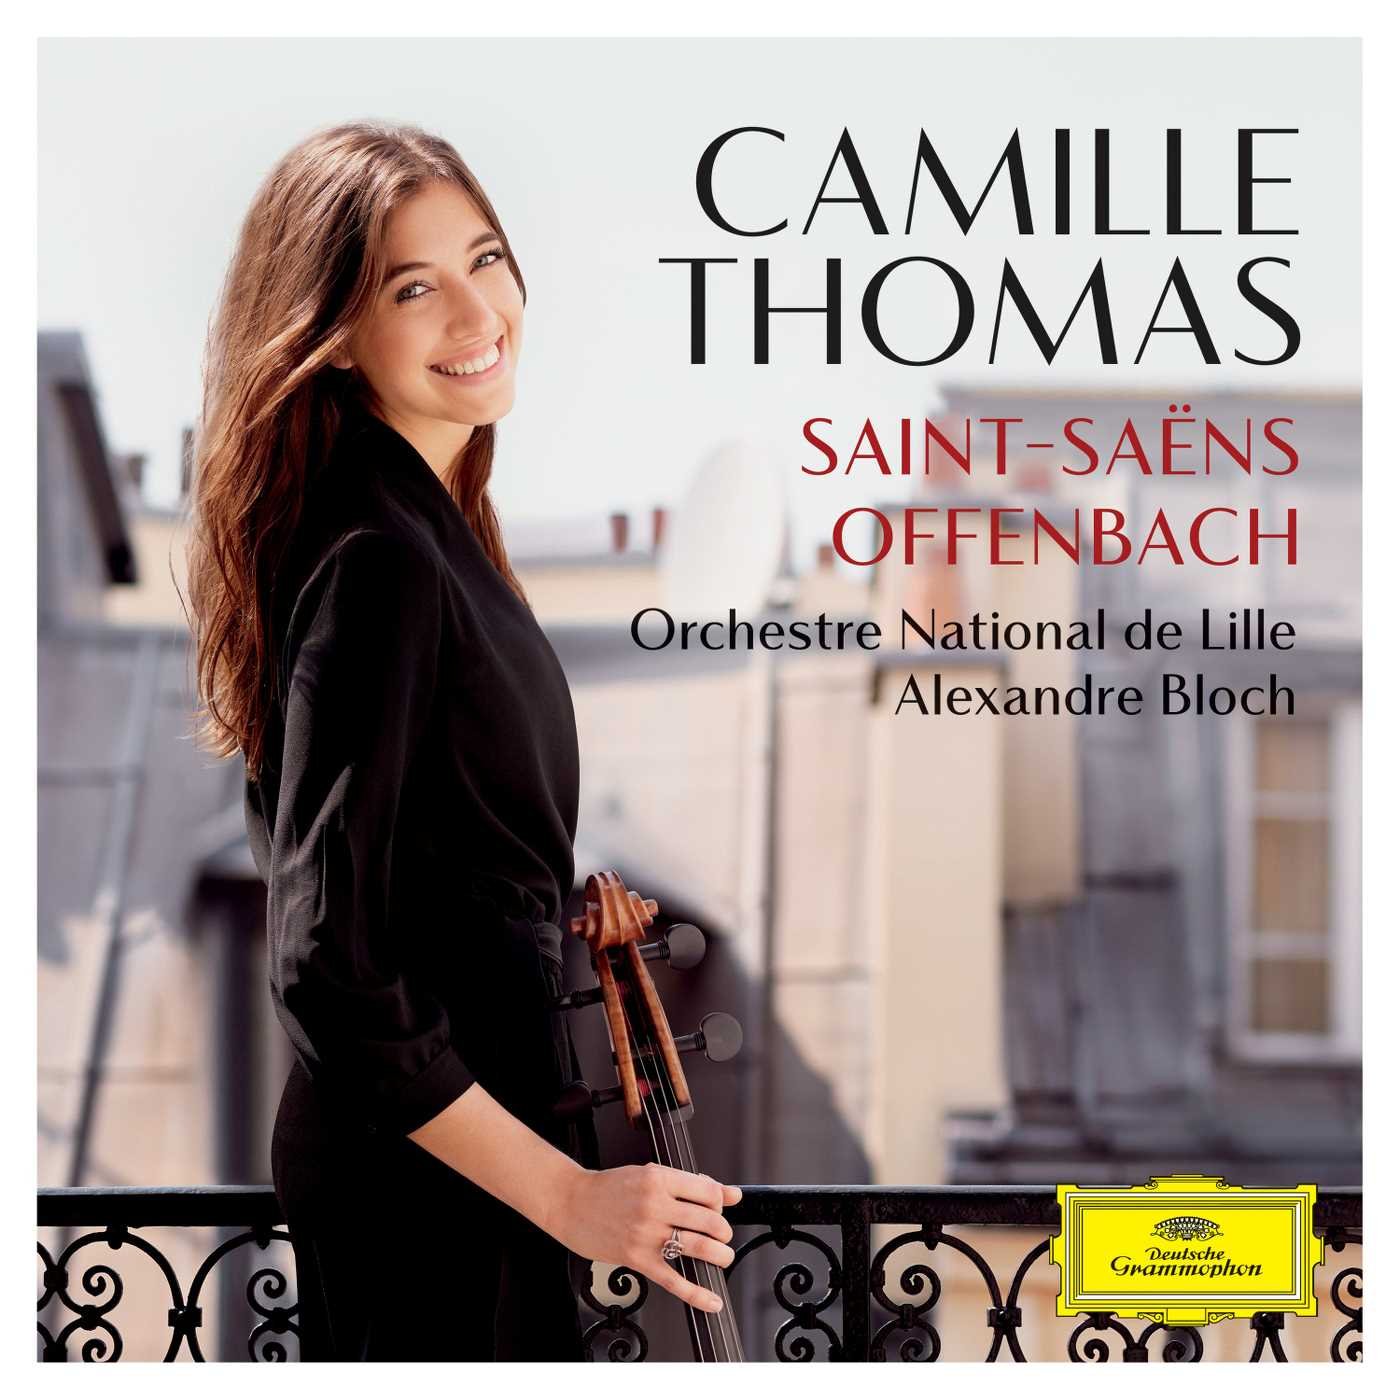 Saint-Saens / Offenbach | Camille Thomas, Orchestre National de Lille, Alexandre Bloch